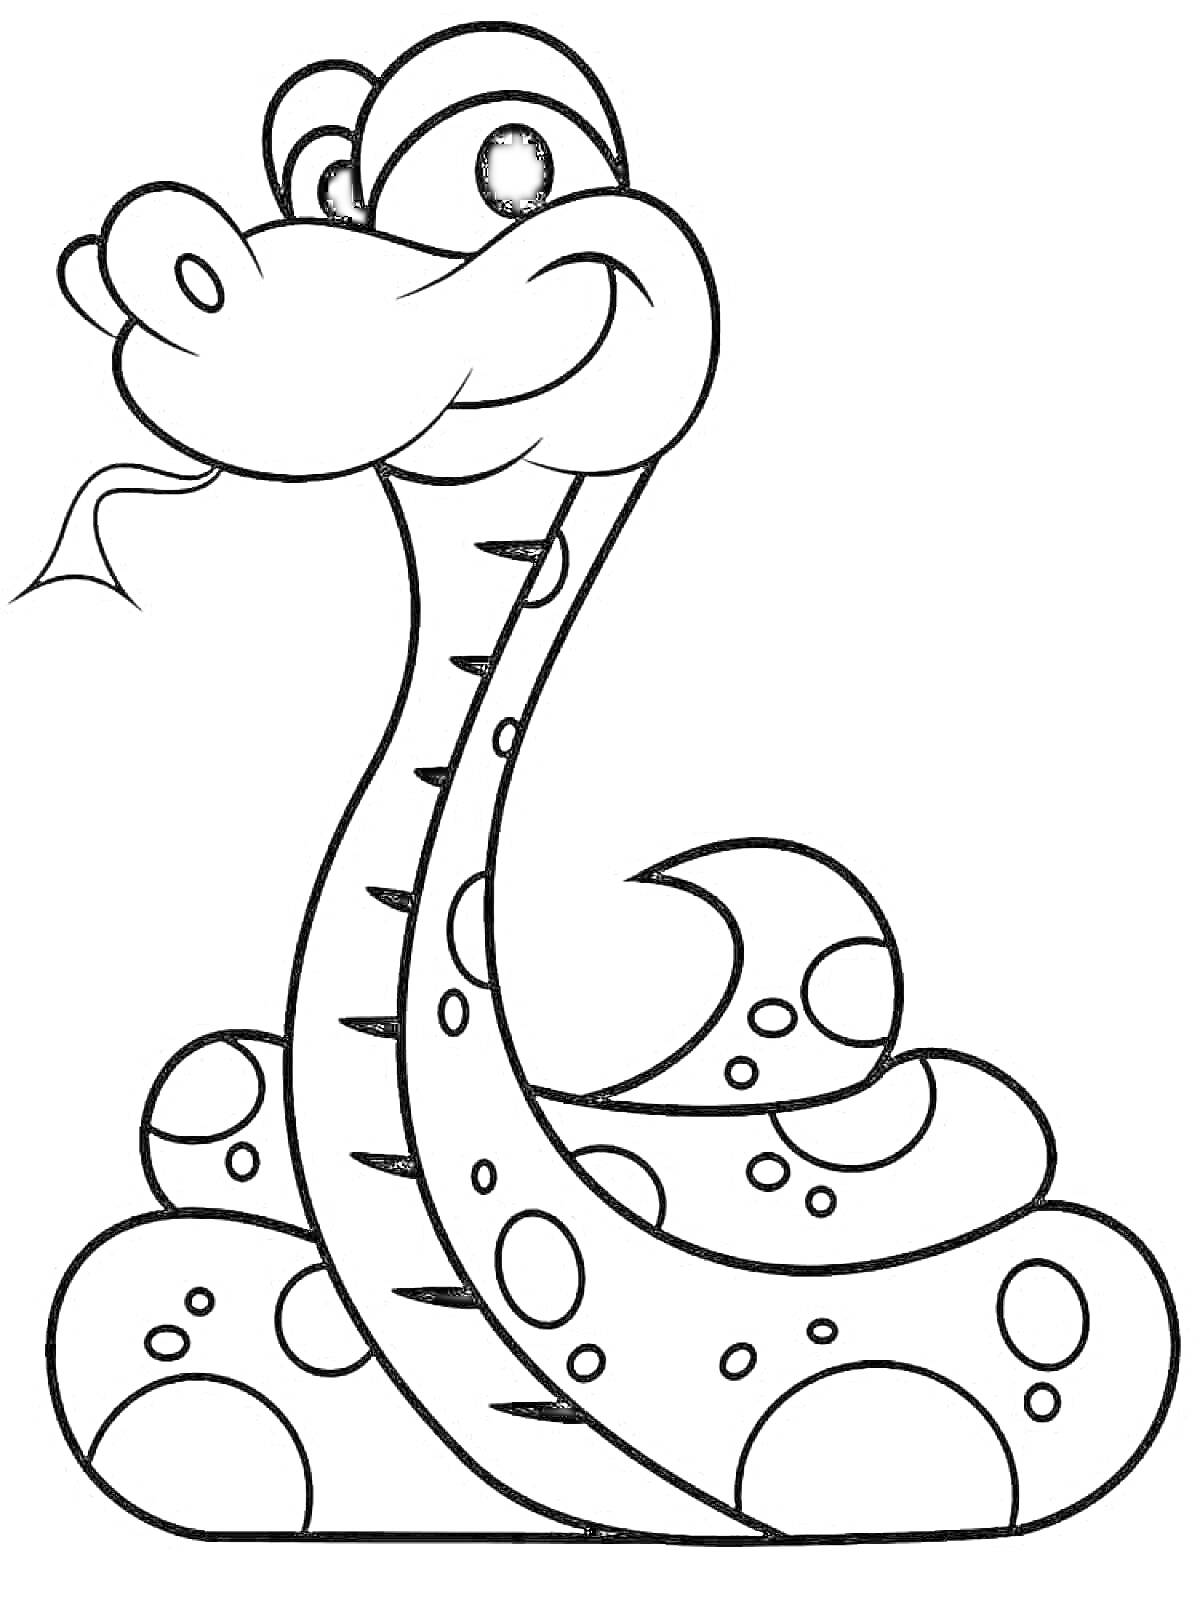 Раскраска Улыбающаяся змея с чешуйками и пятнами